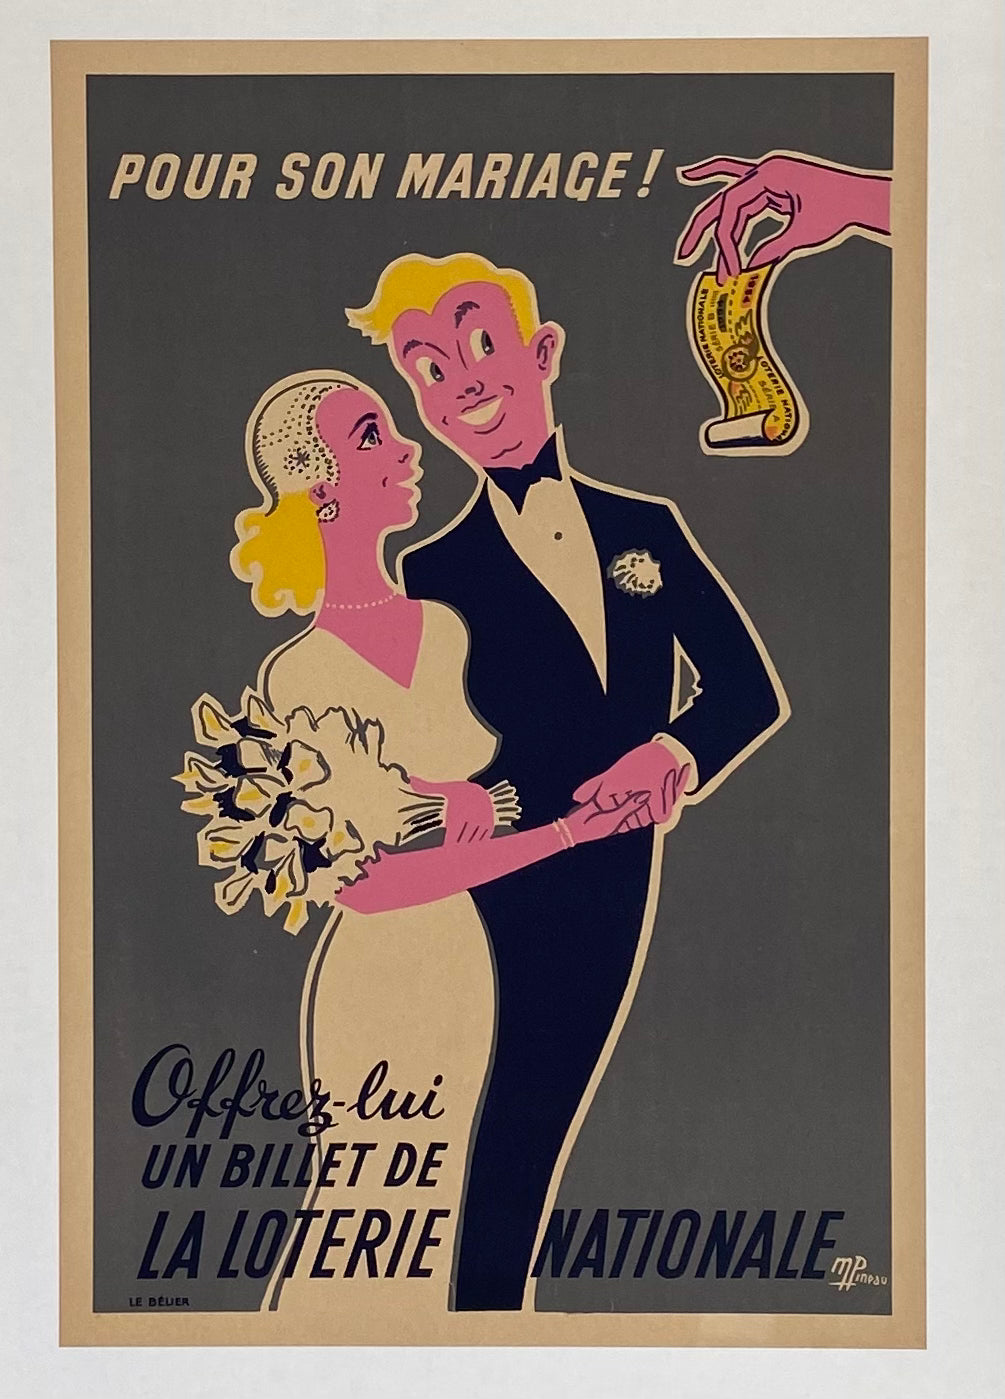 Affiche Originale offrez lui un billet de la loterie nationale pour son mariage - M Pineau